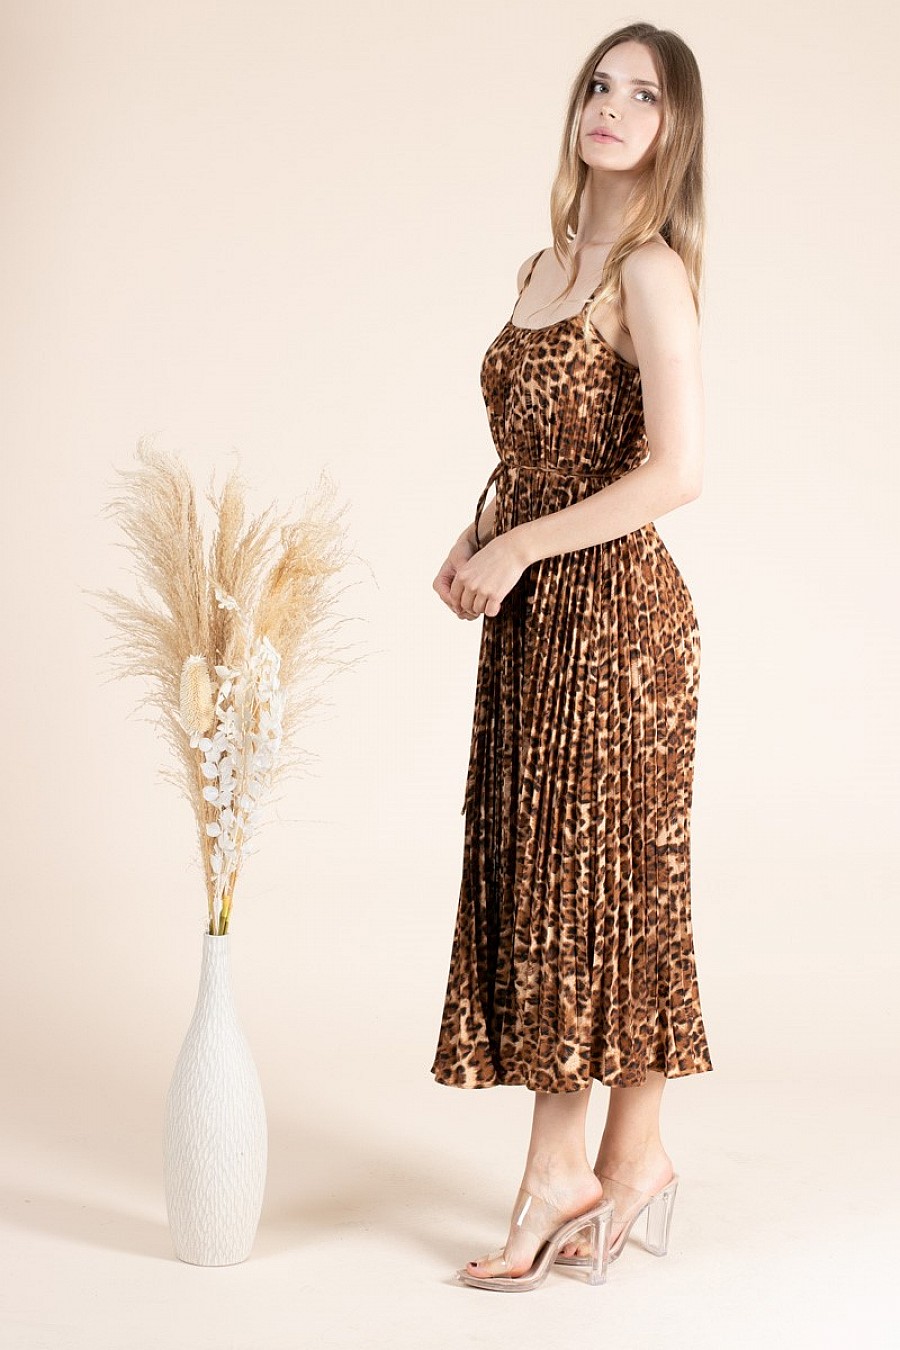 Spaghetti Strap Leopard Print Midi Dress - Pleated